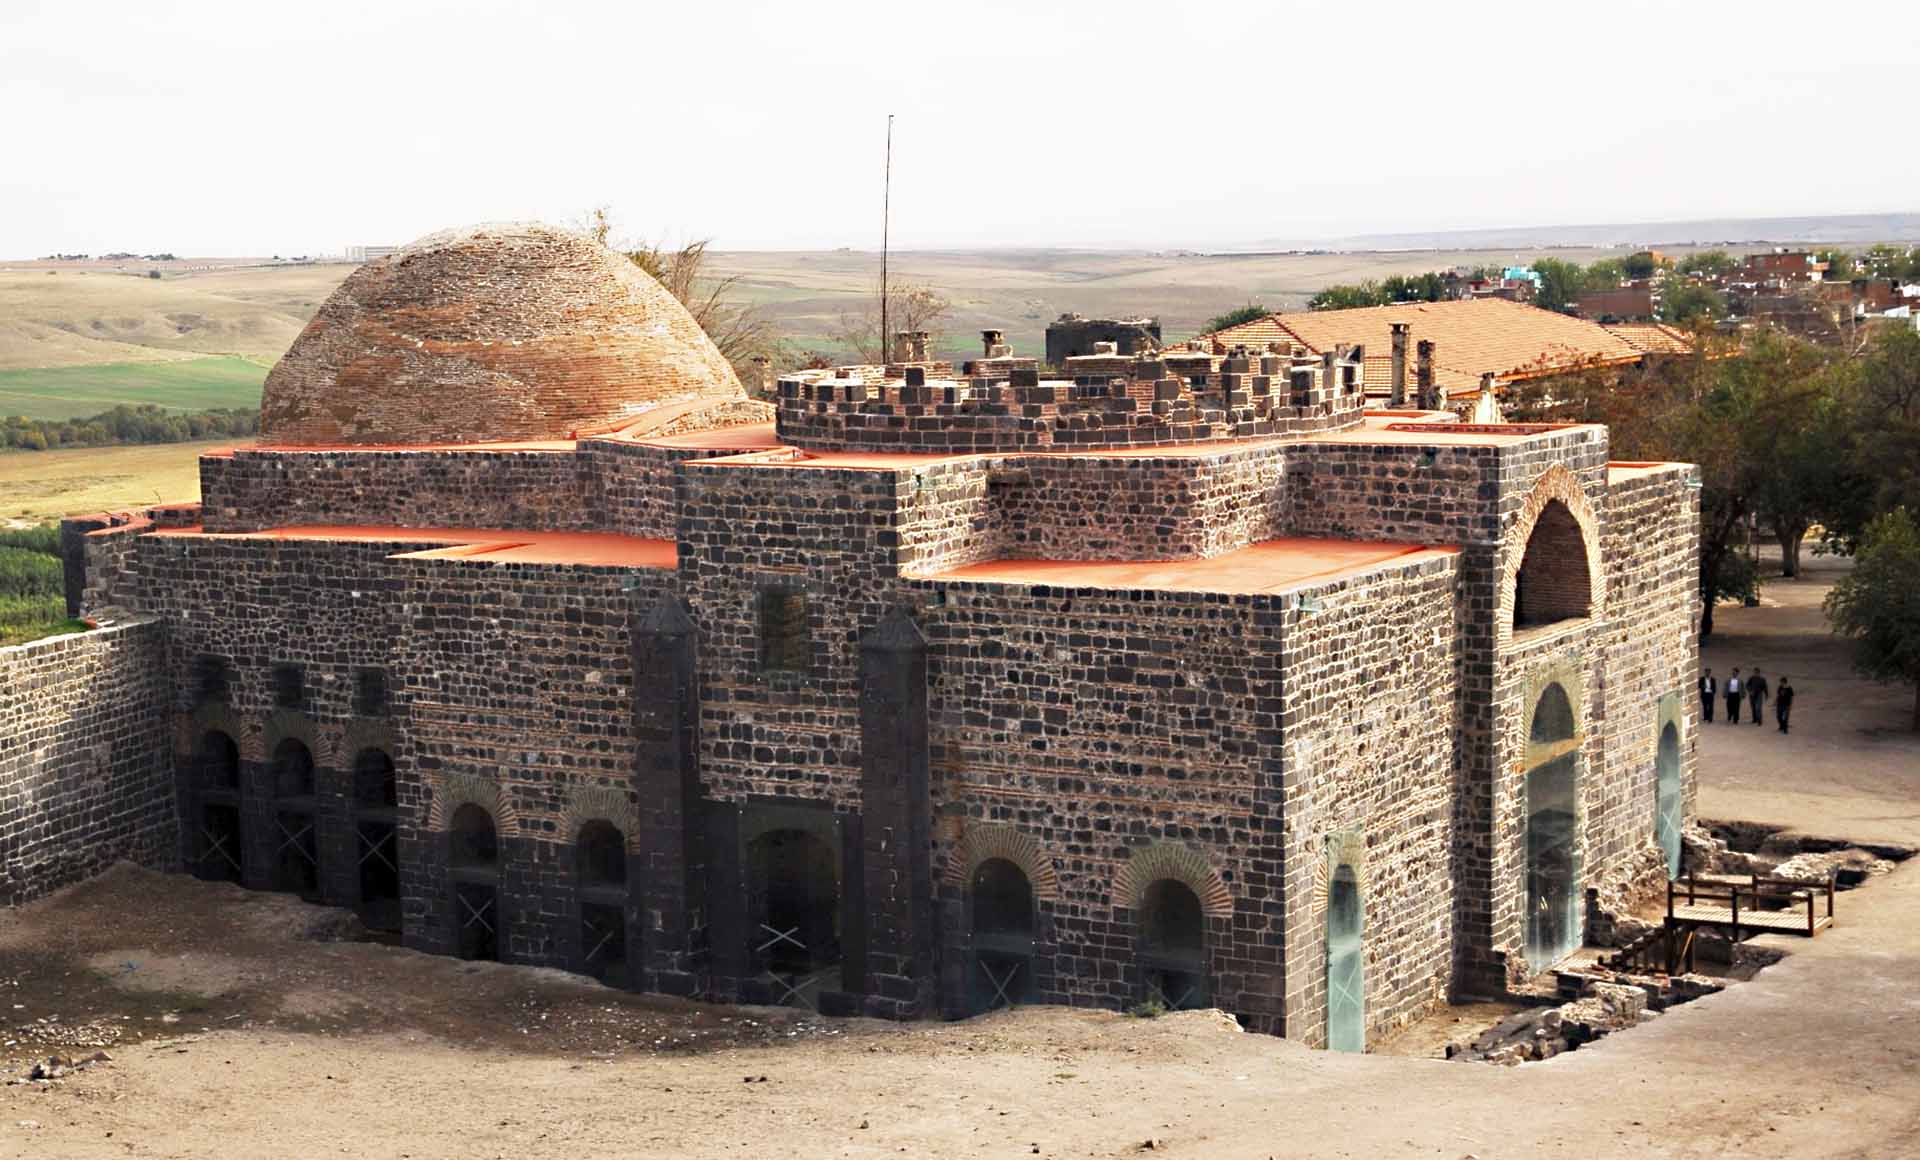 Chiêm ngưỡng vẻ kỳ vĩ của Diyarbakir - Tường thành dài thứ 2 thế giới bị ảnh hưởng bởi động đất tại Thổ Nhĩ Kỳ - Ảnh 11.